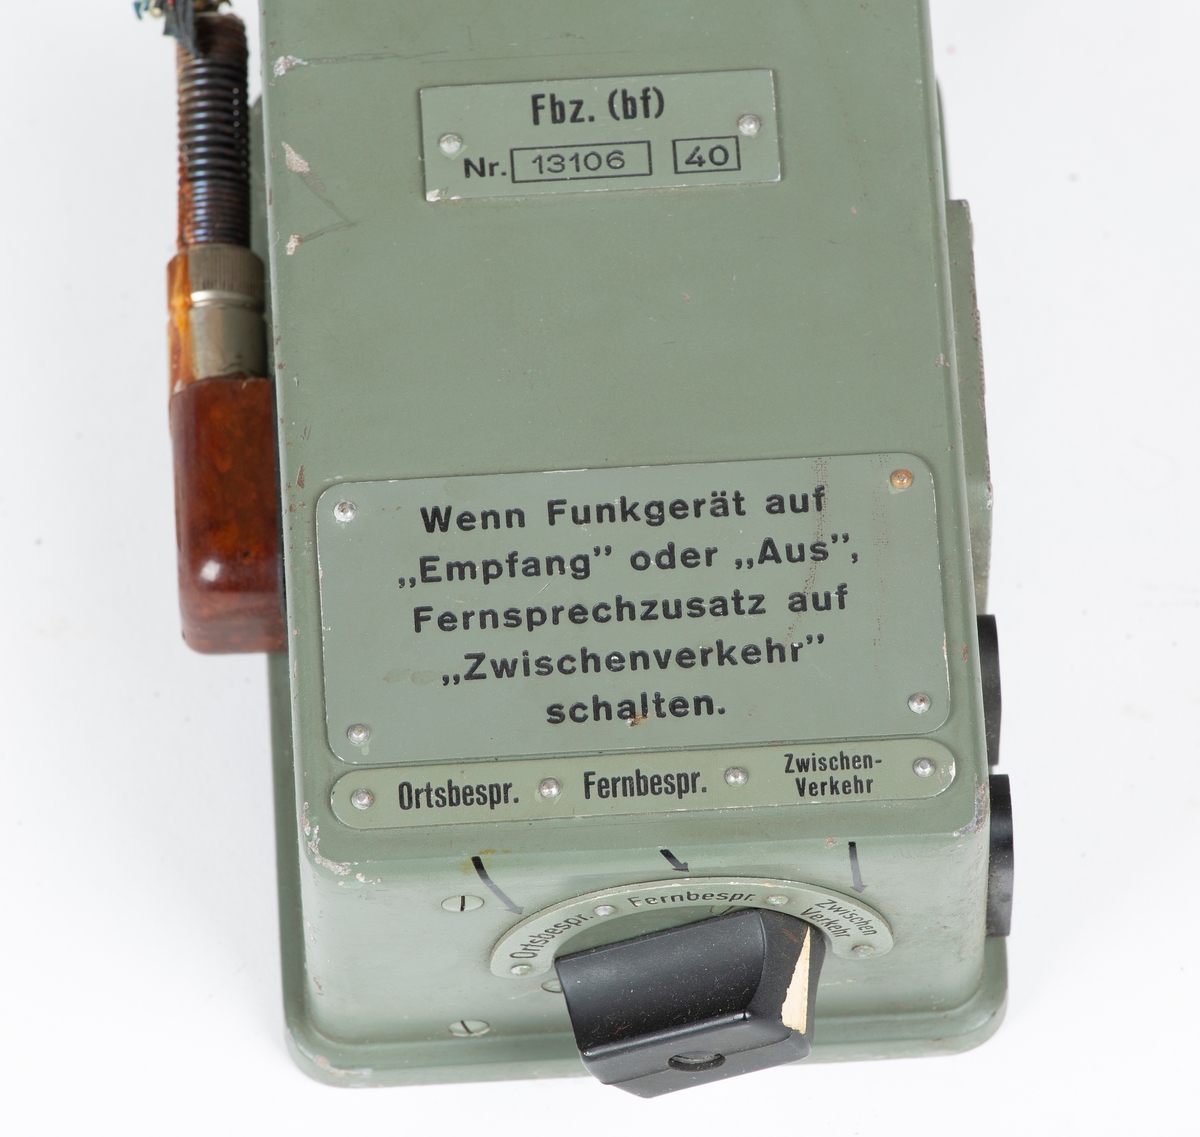 2 stk. kabeltrommel i metallkasser. Bærerem. Tyskprodusert, antagelig fra 2. verdenskrig. Til radio og telefonsamband. Inneholder også noen reservedeler og spenningsutligner.